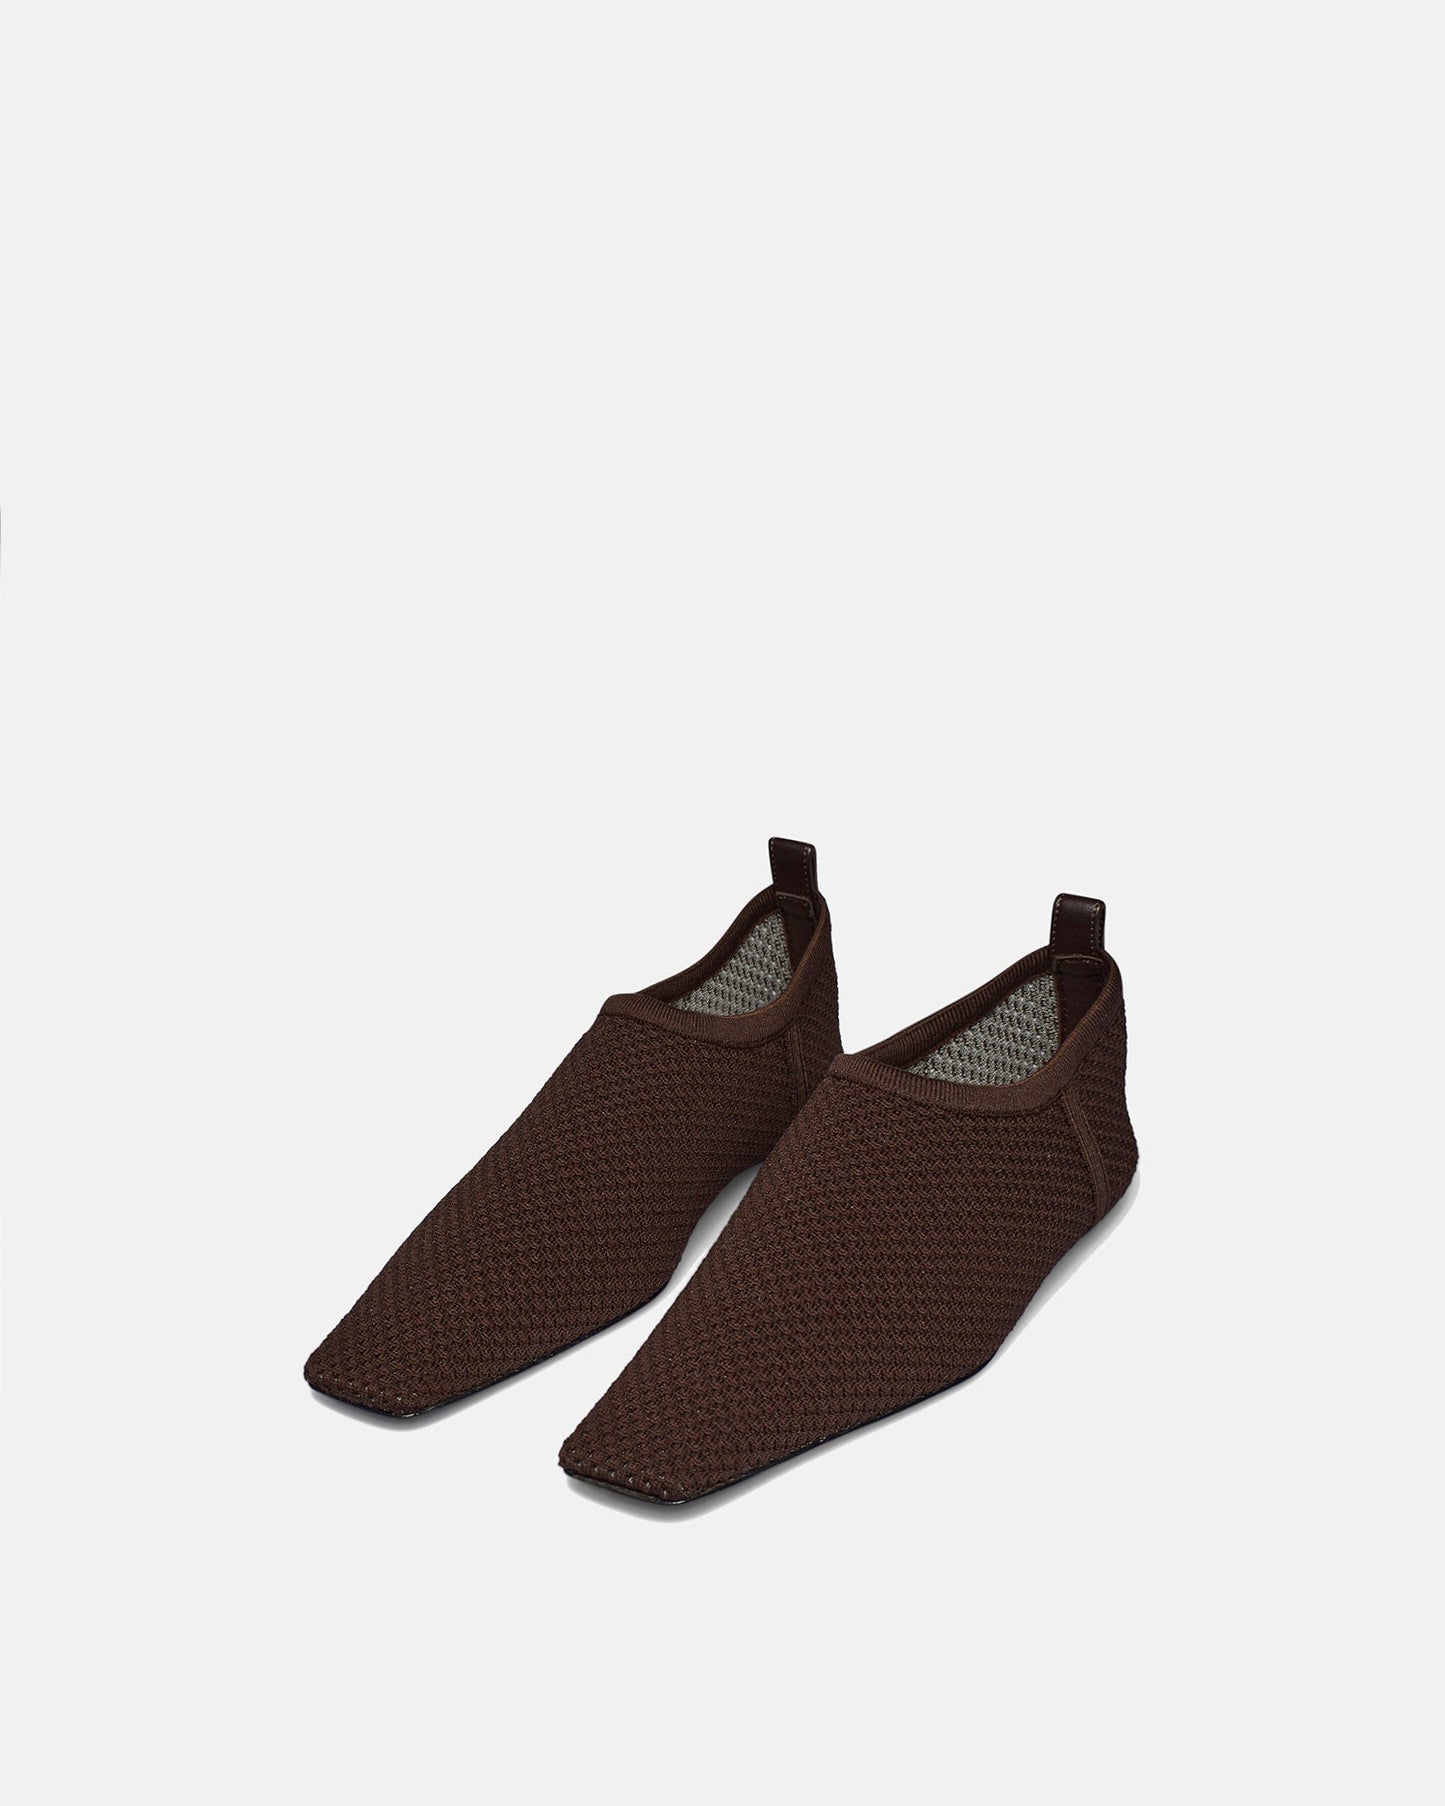 Buju - Mesh-Knit Square-Toe Slip-On Shoes - Java